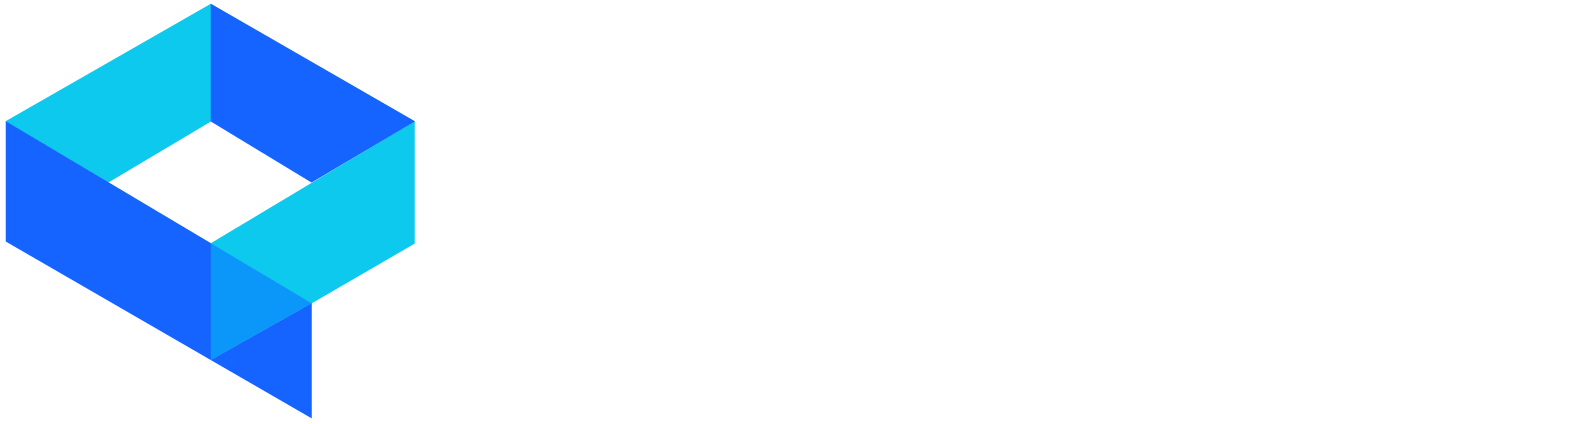 Qubewave logo